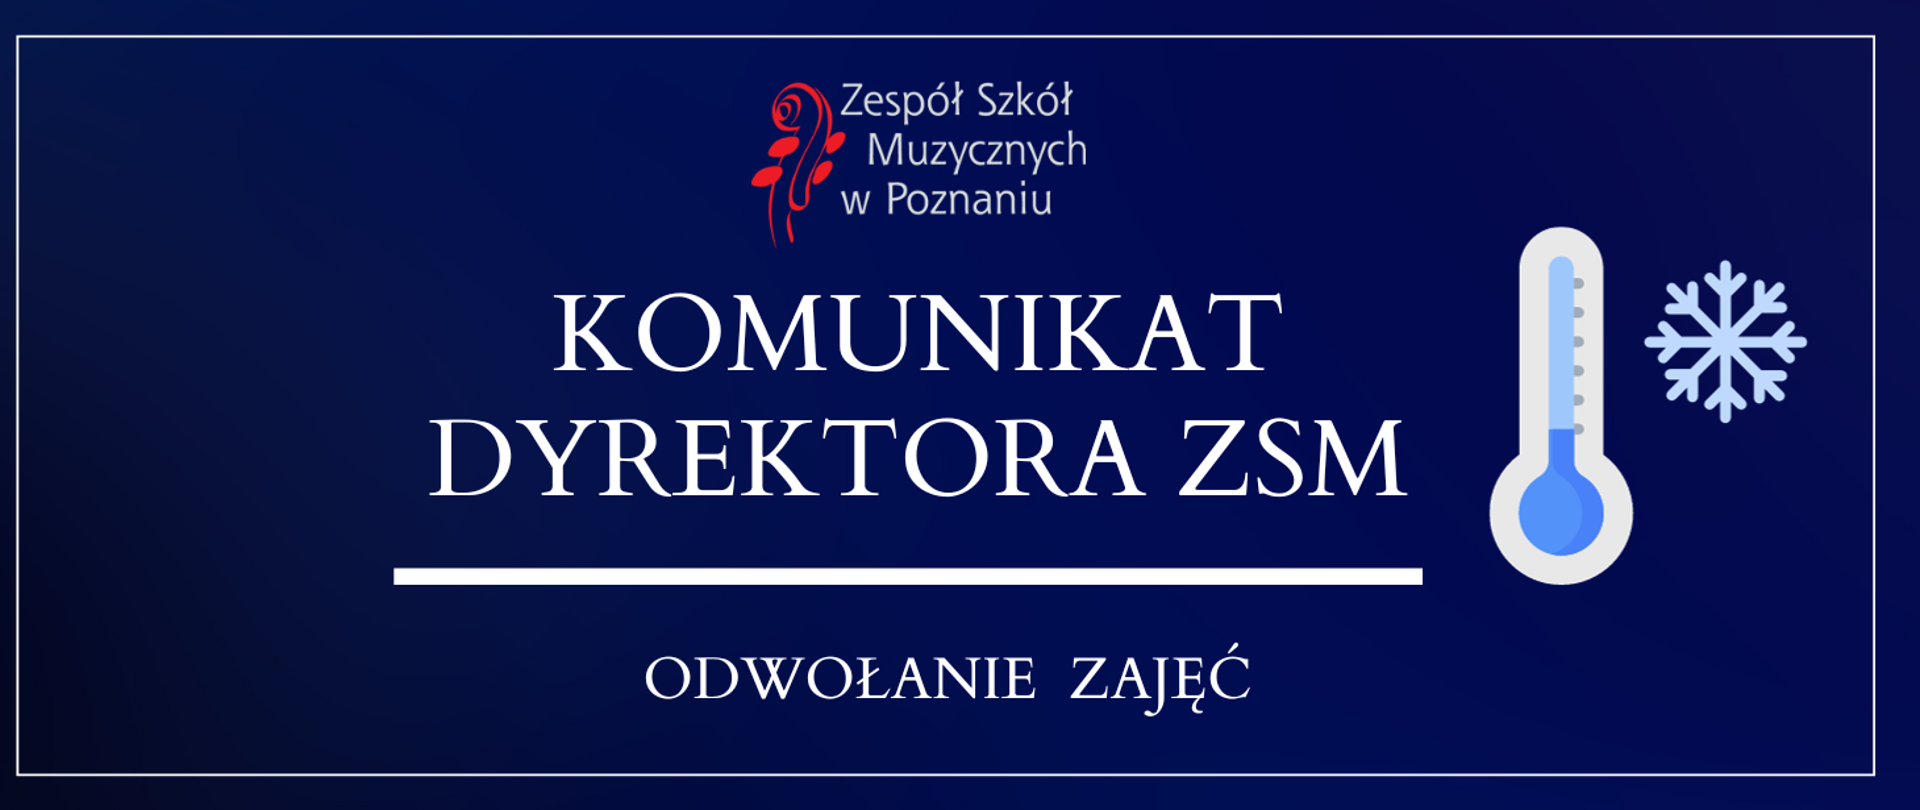 Baner na granatowym tle z logo ZSM. Tekst: Komunikat dyrektora ZSM - odwołanie zajęć